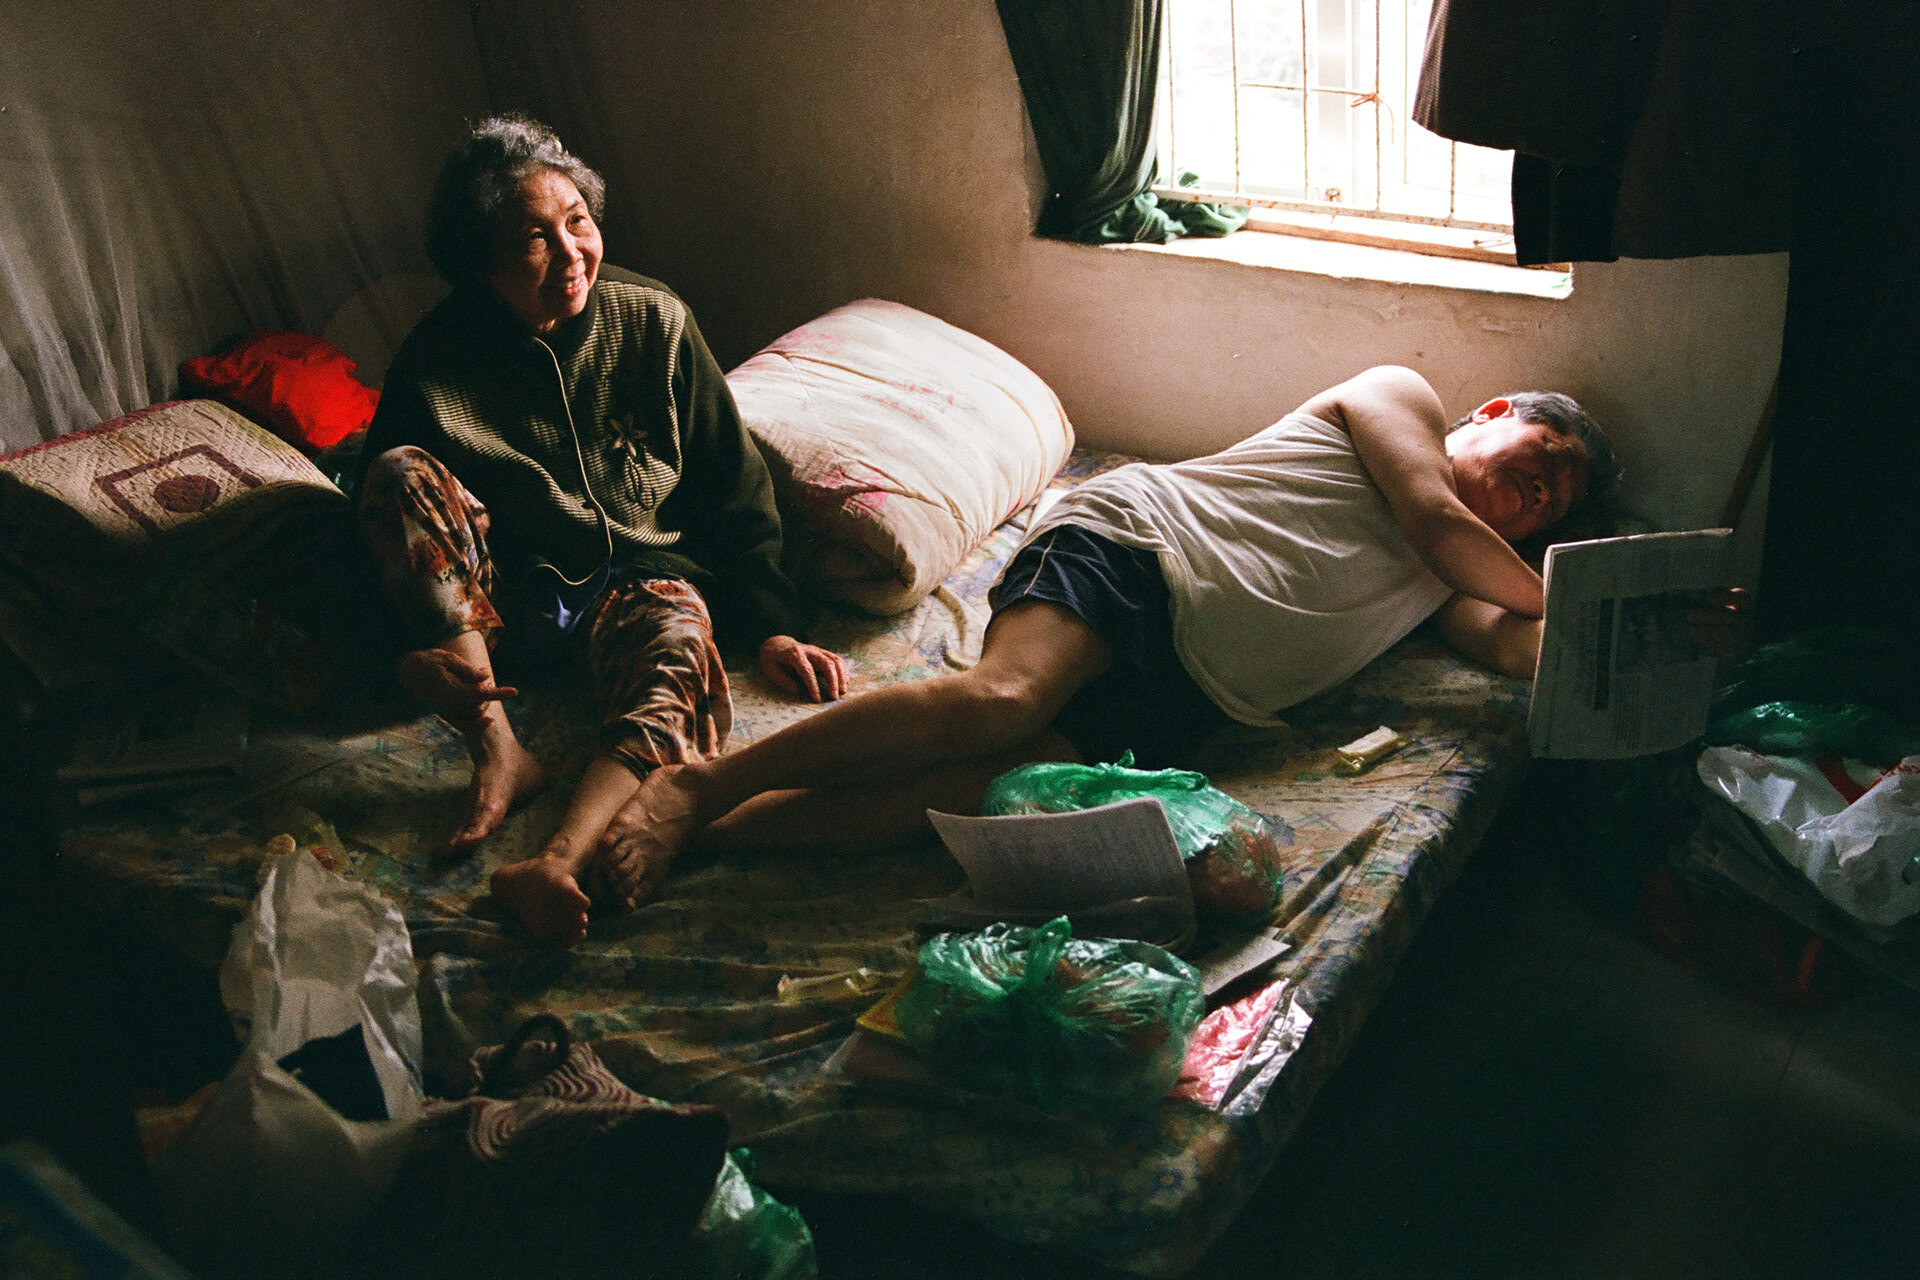 Trong cơn bão đại dịch, giới trẻ Việt nhìn lại ‘những gì giá trị’ - 2